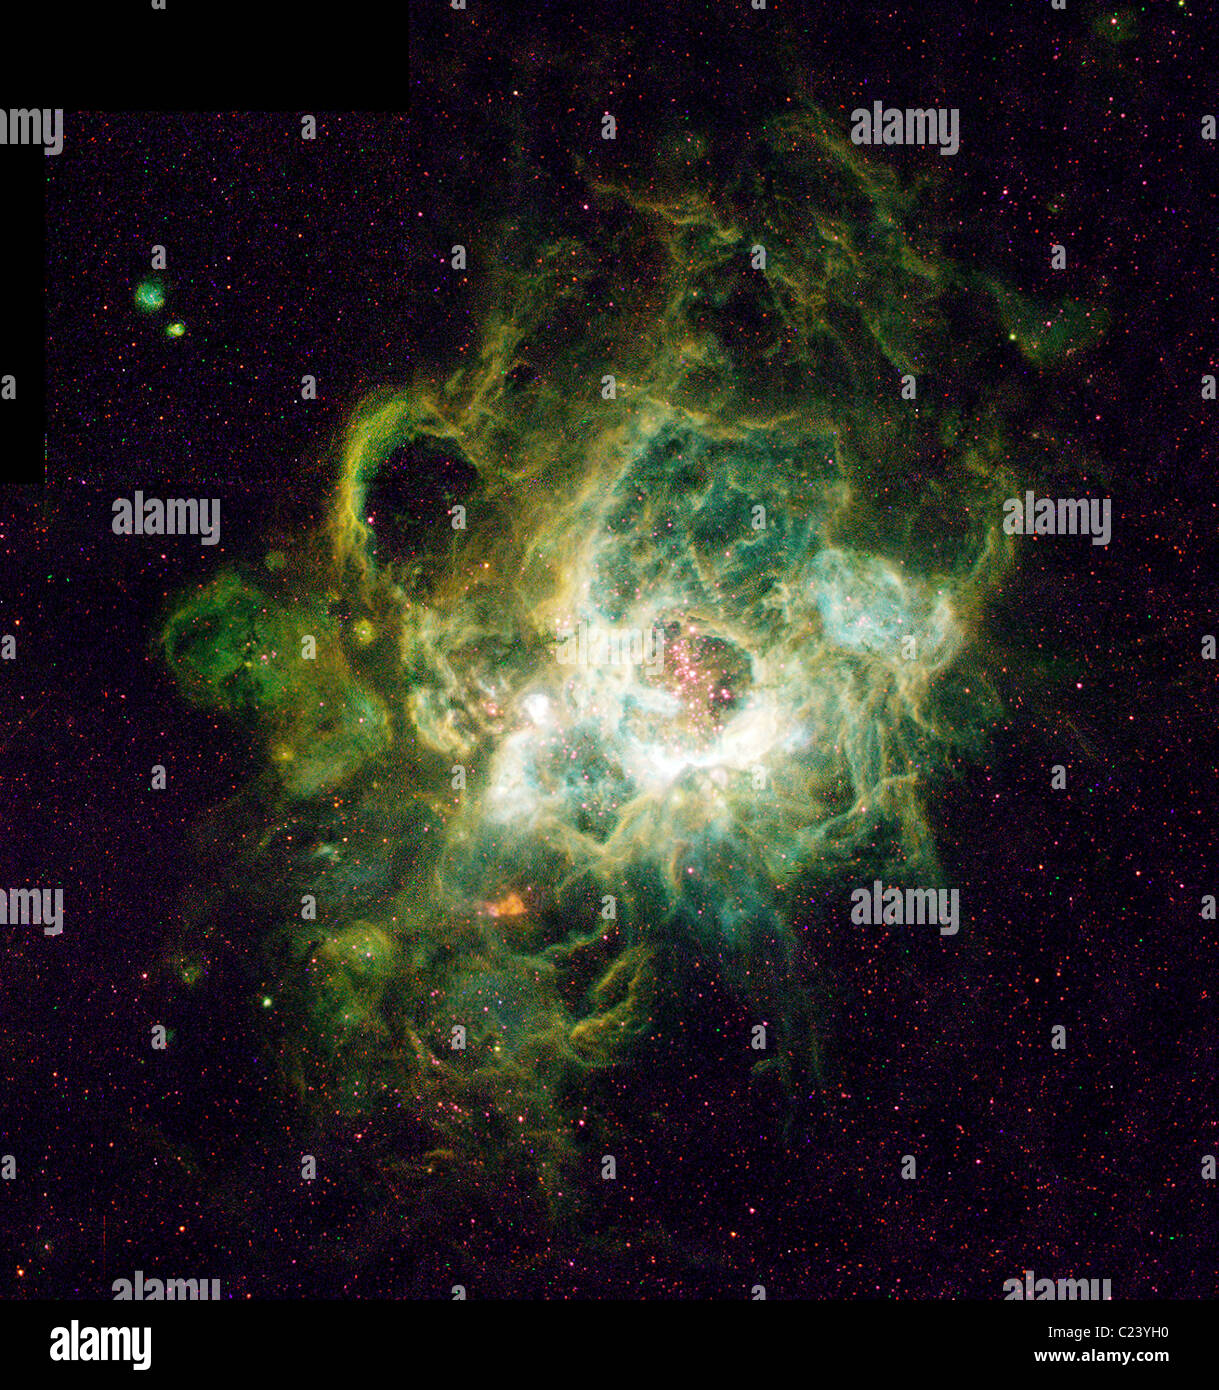 Vivaio di nuove stelle questo è un telescopio spaziale Hubble (immagine a destra) di un vasto chiamato nebulosa NGC 604 Foto Stock